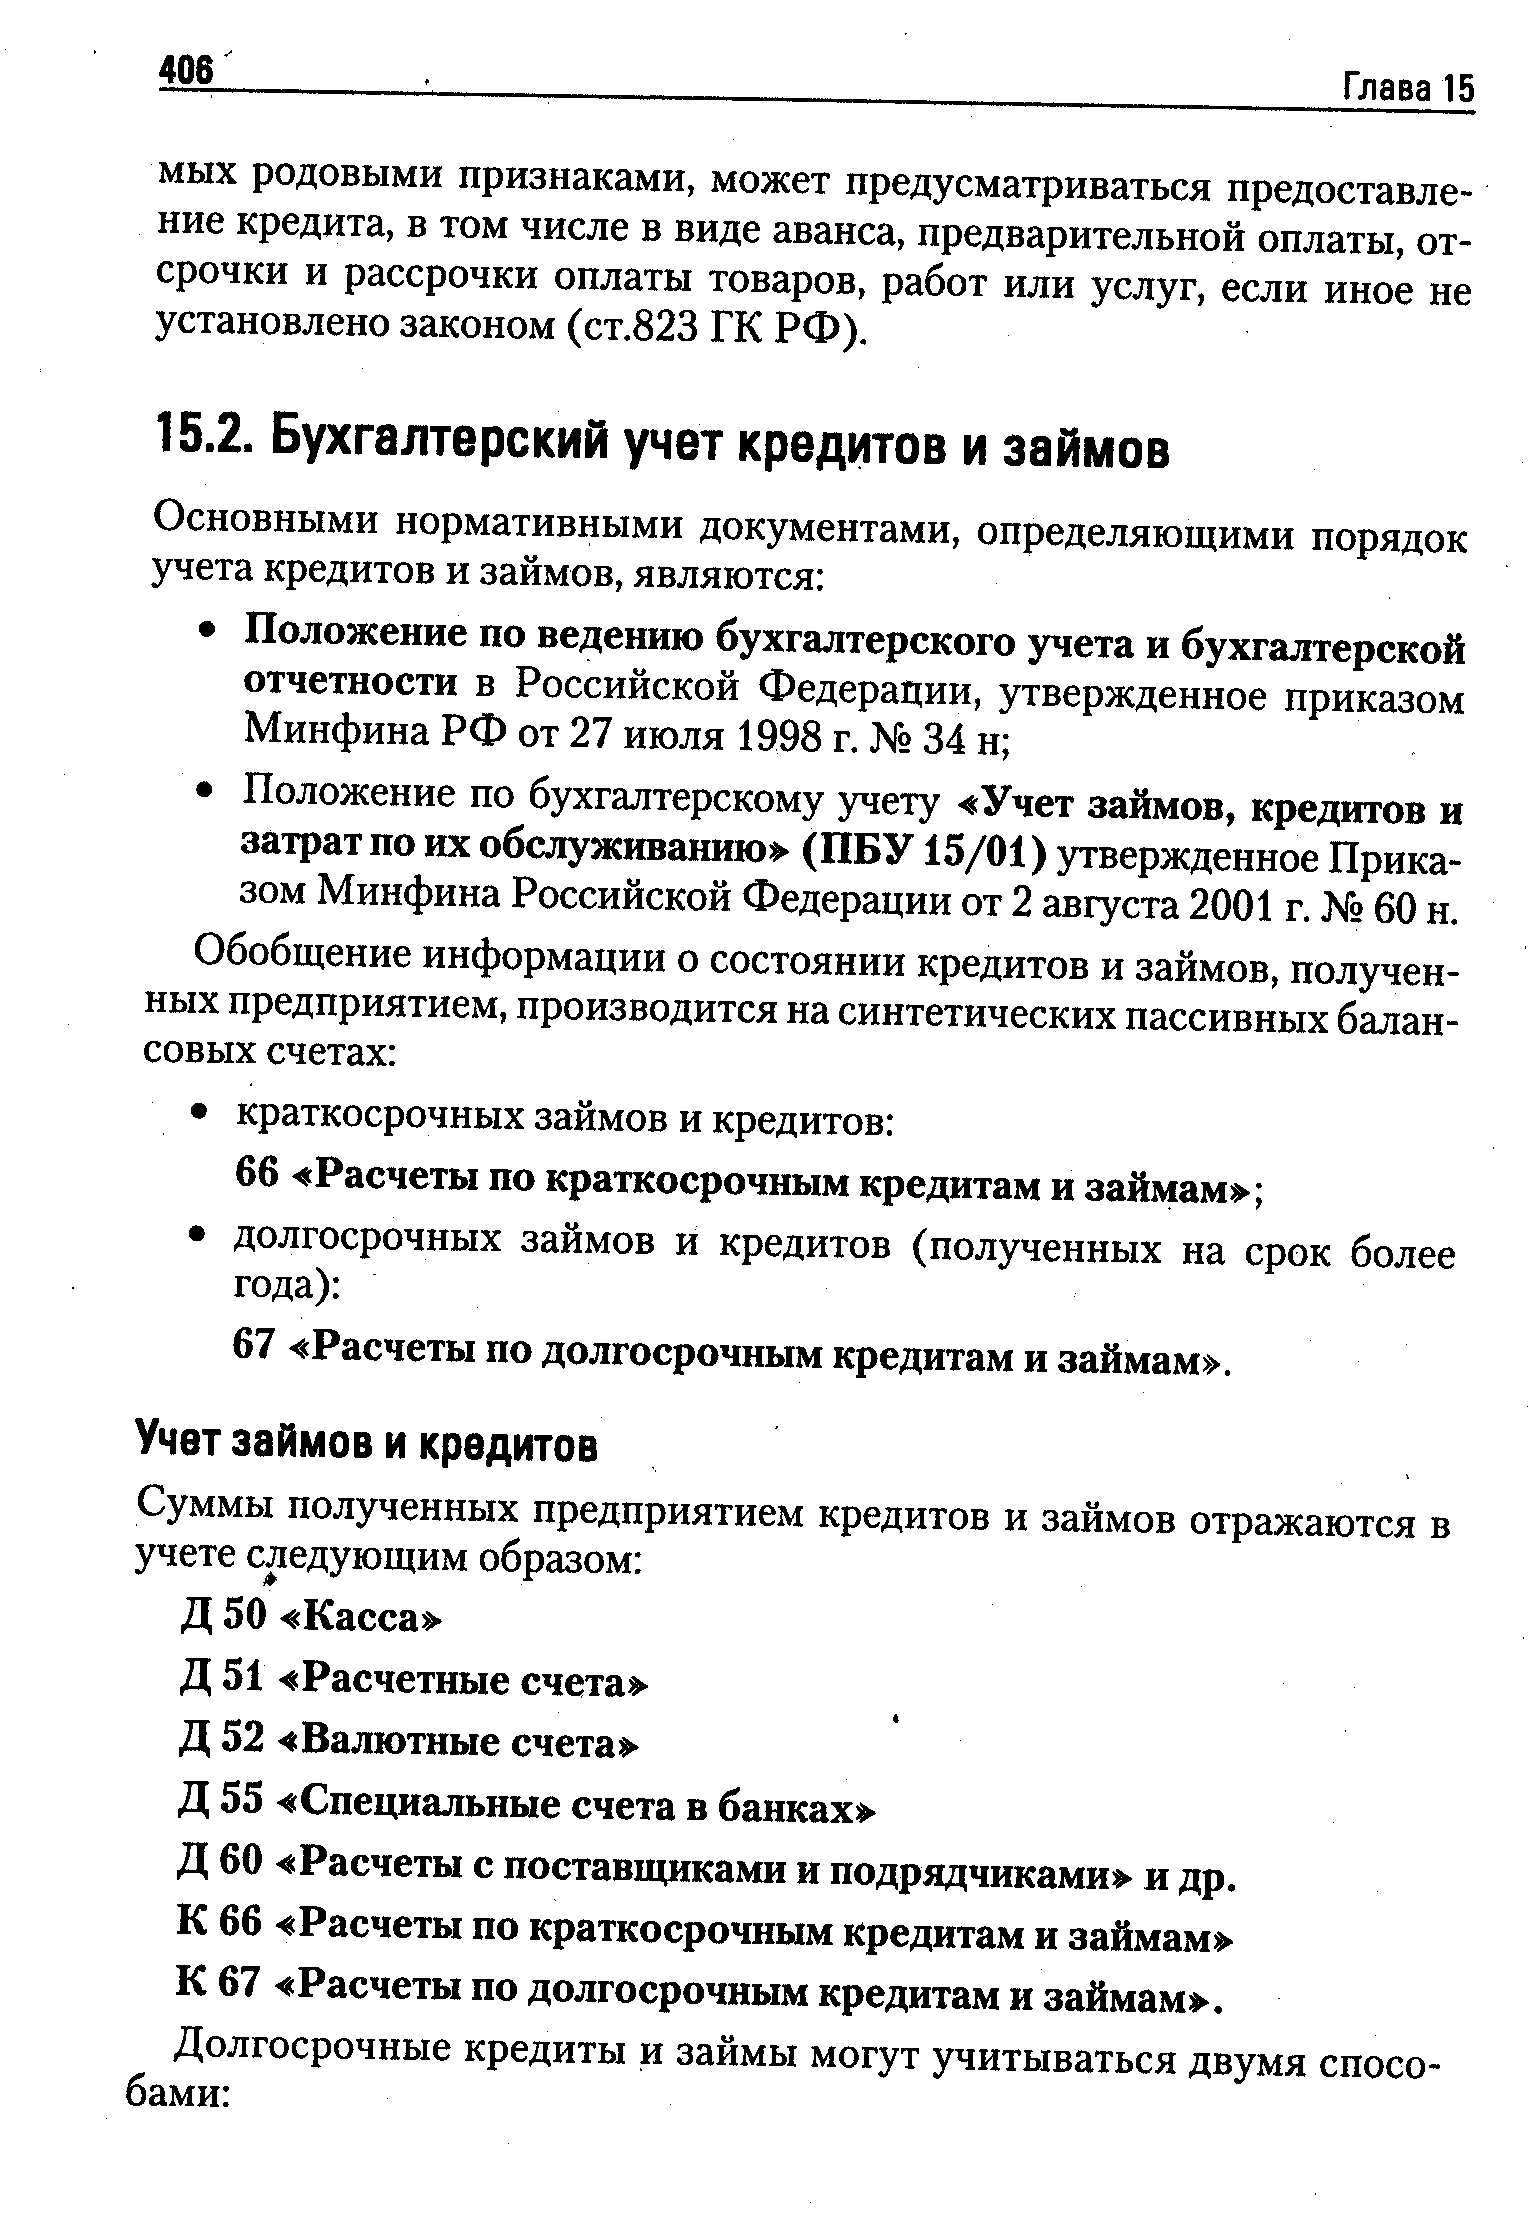 Д 60 Расчеты с поставщиками и подрядчиками и др.
